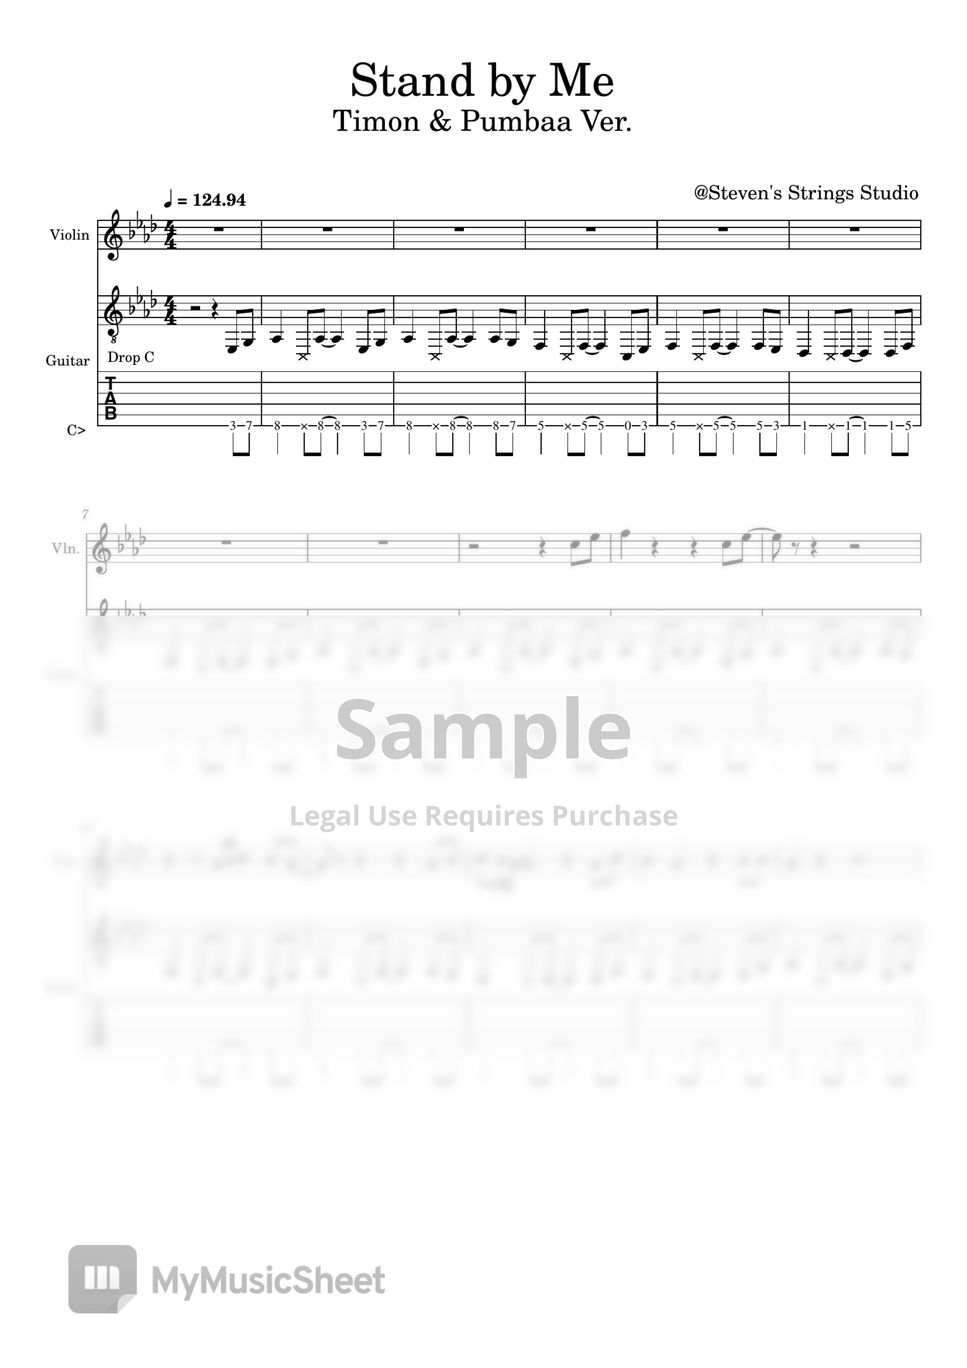 John Lennon - Stand By Me (Timon & Pumbaa ver.  / Violin Guitar Duet) by Steven's Strings Studio